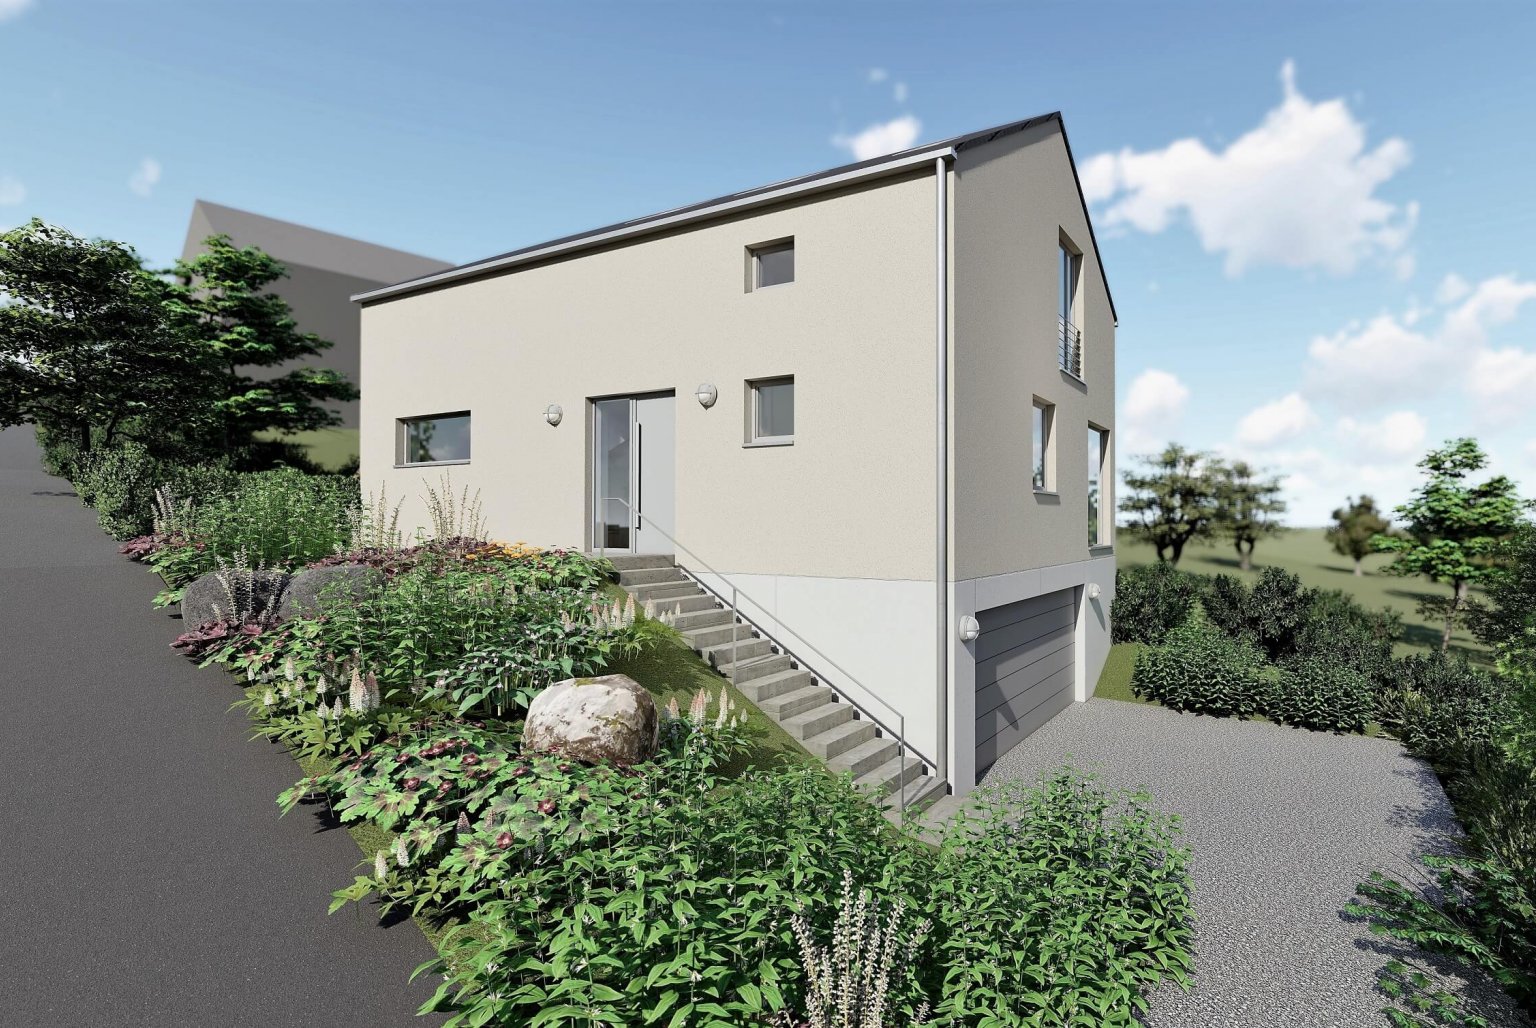 Neubau eines Einfamilienhauses in Wiehl-Bielstein - Effizienzhausstandard 55